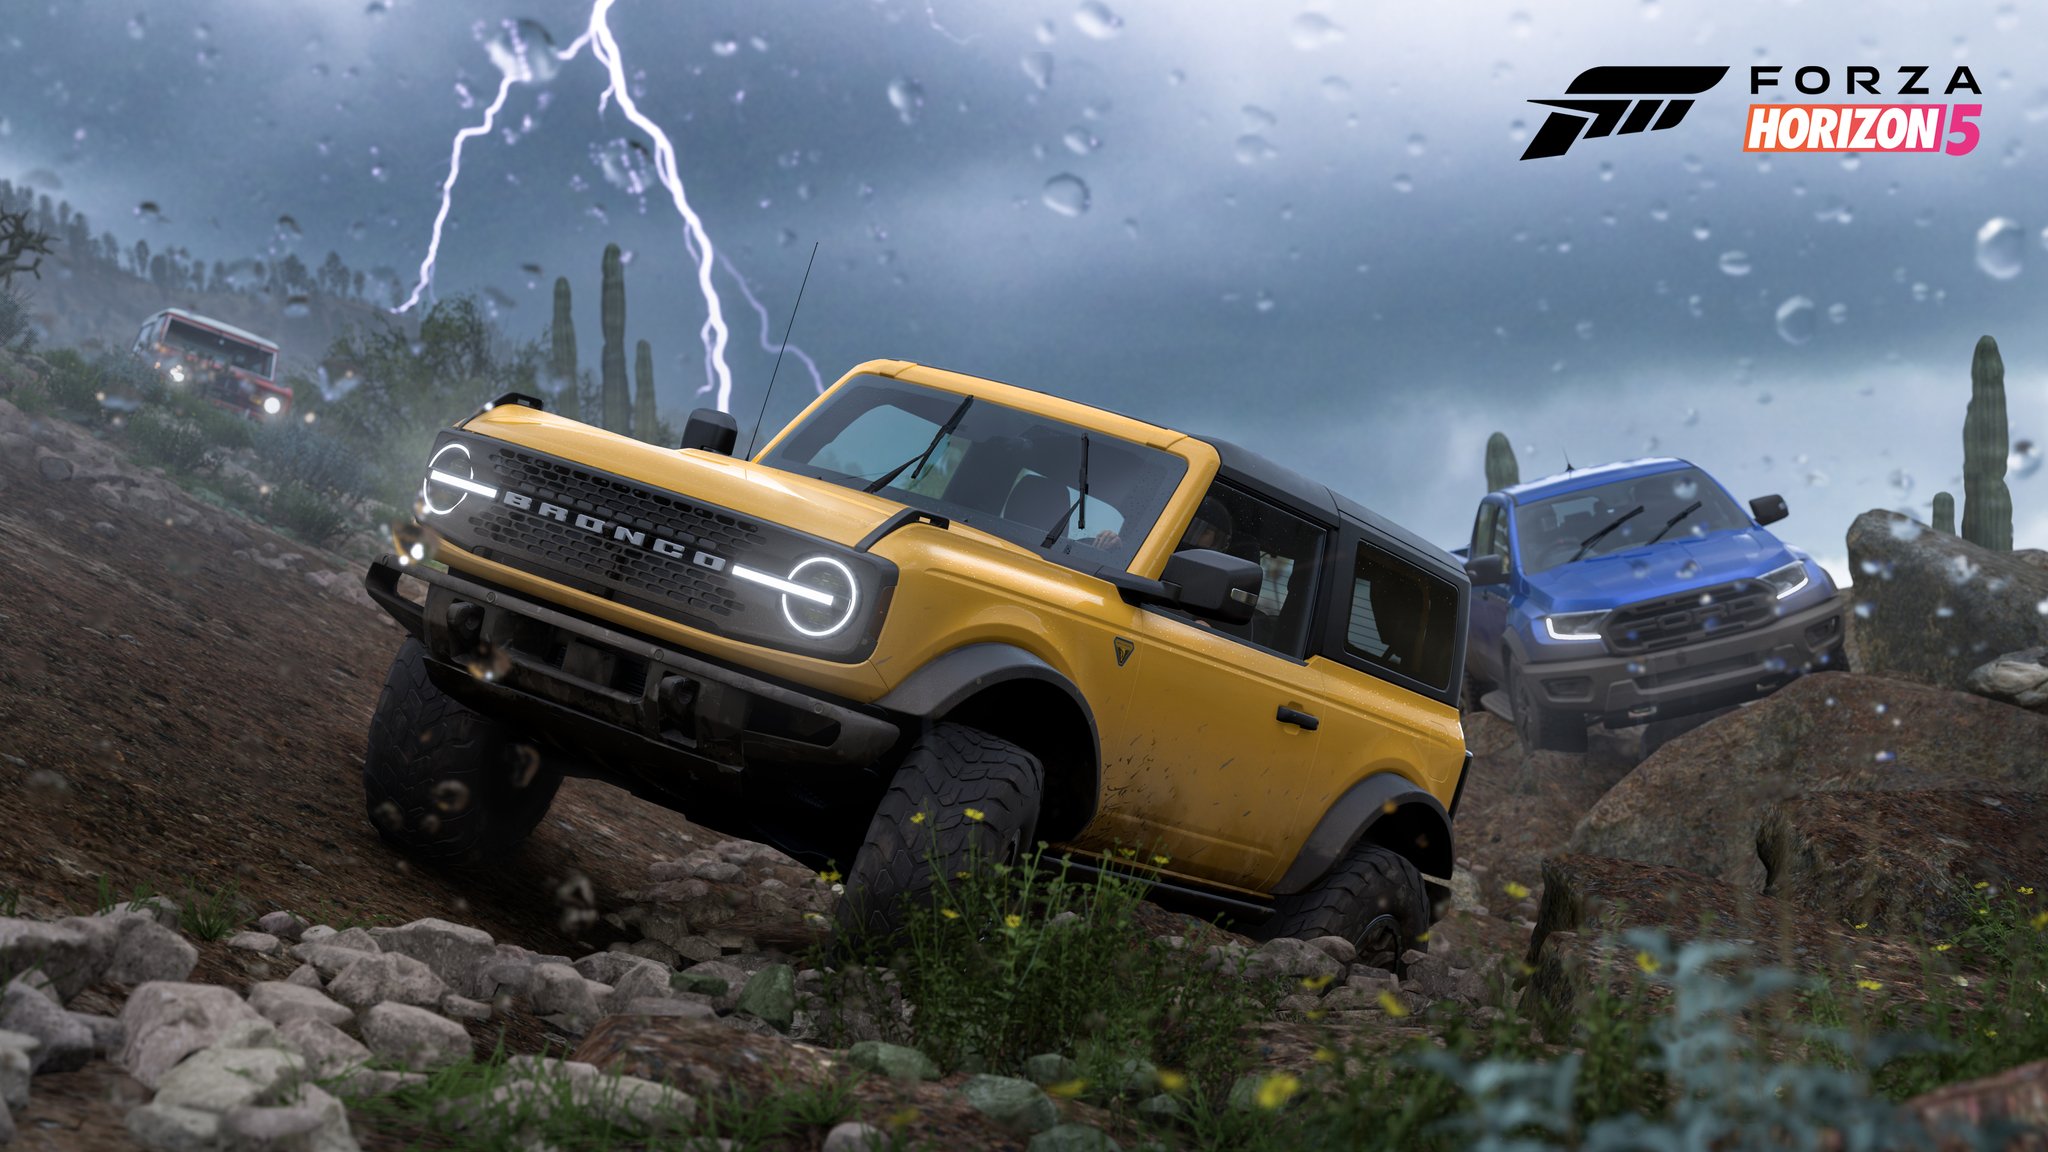 Screenshot von Forza Horizon 5 mit Autos, die während eines Sturms im Gelände unterwegs sind.